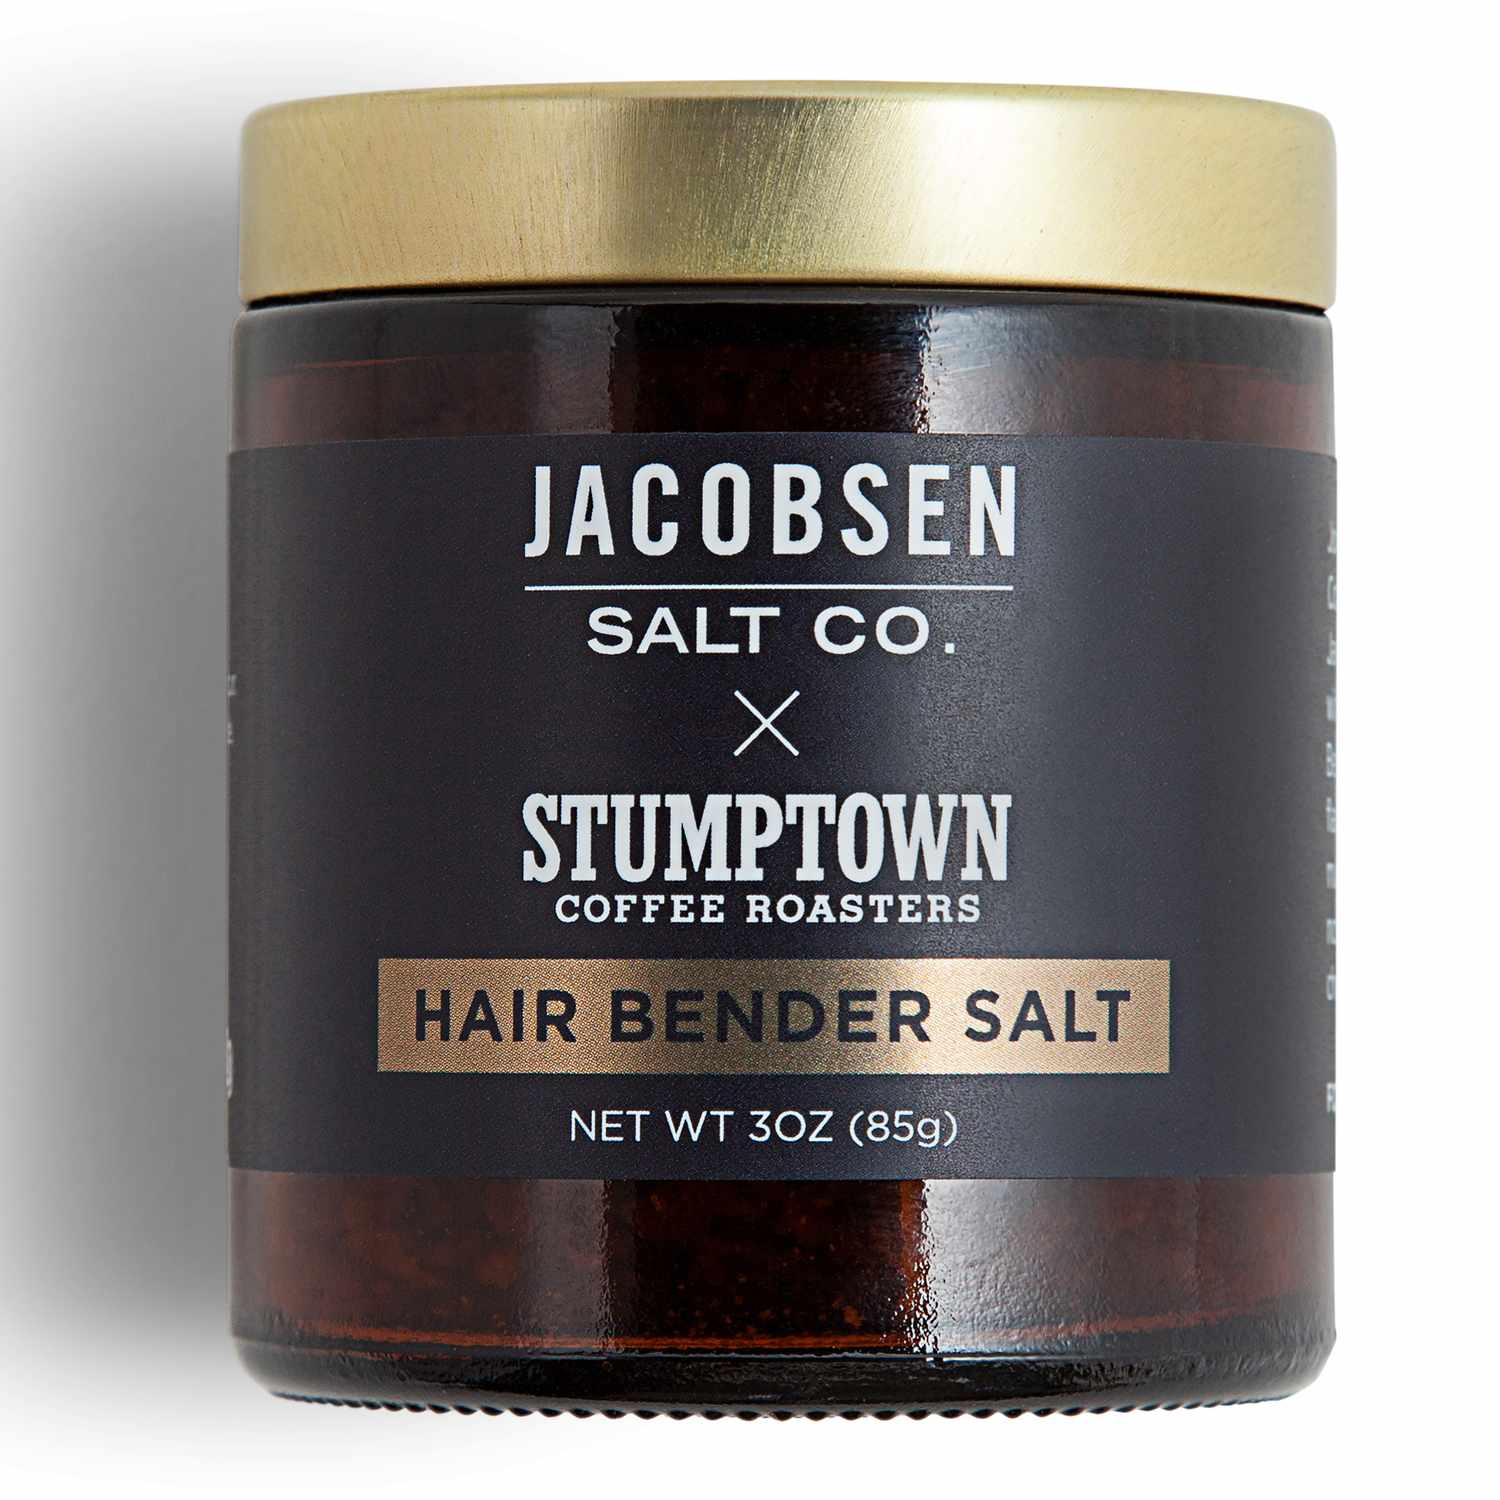 Jar of Stumptown Coffee Roasters Jacobsen Hairbender Salt